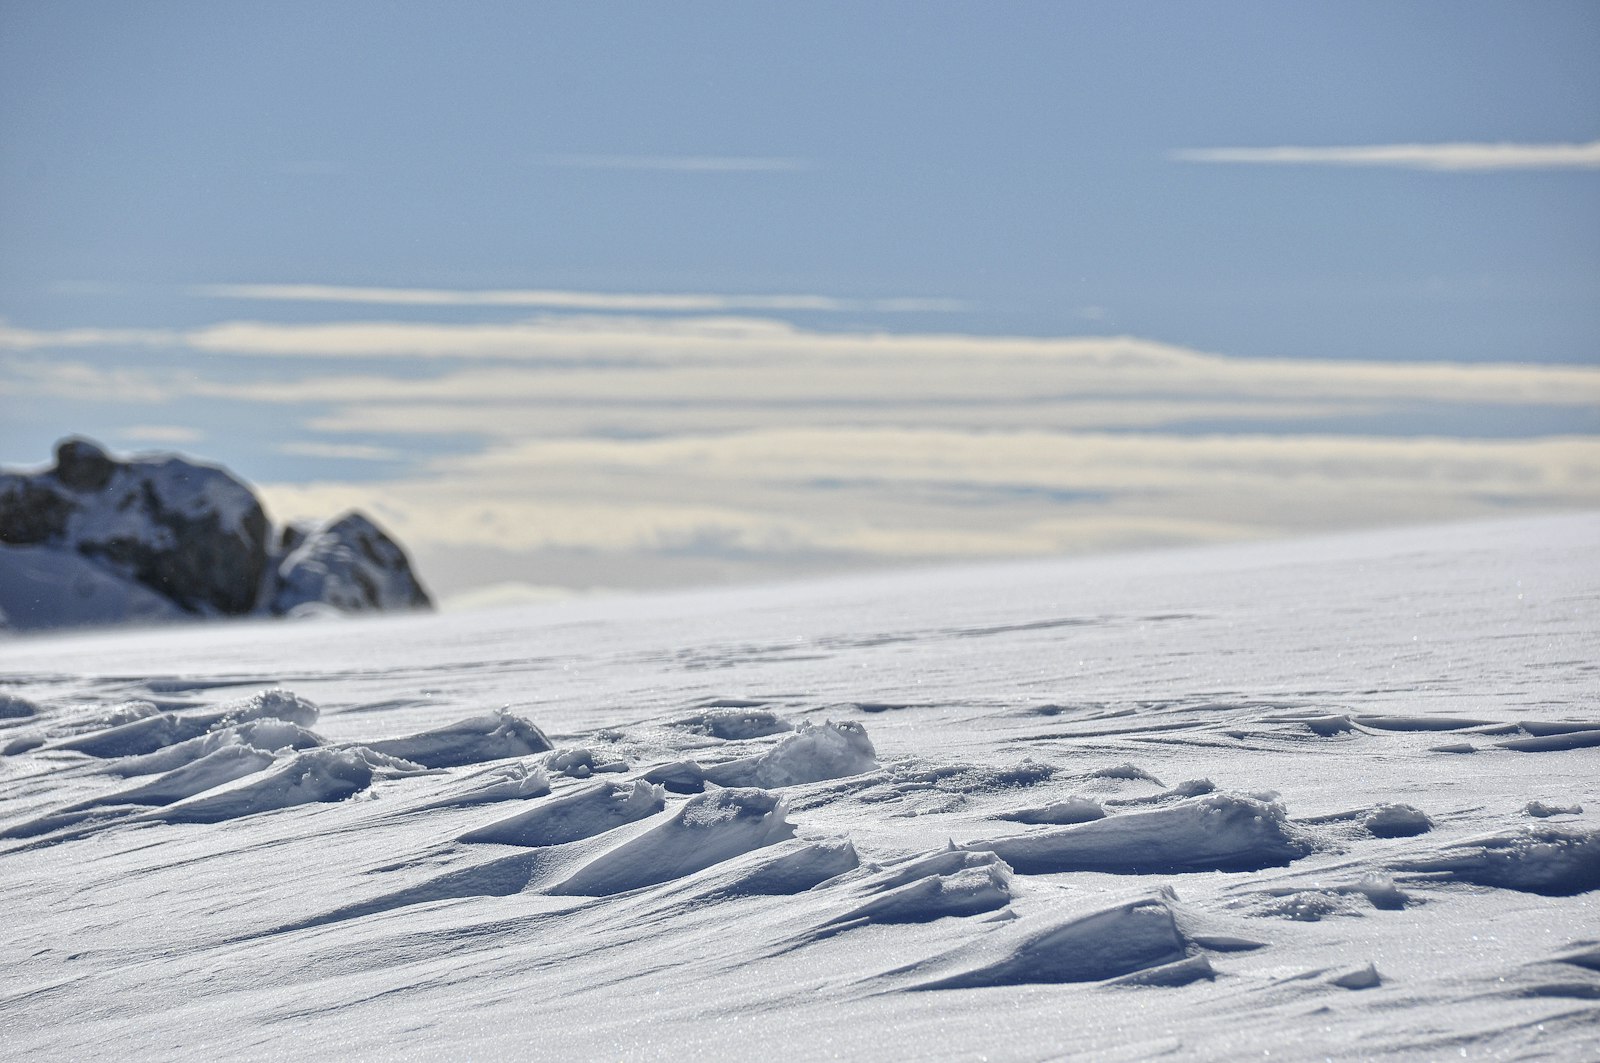 Nikon D90 + Nikon AF-S DX Nikkor 18-300mm F3.5-5.6G ED VR sample photo. Landscape photo of snows photography